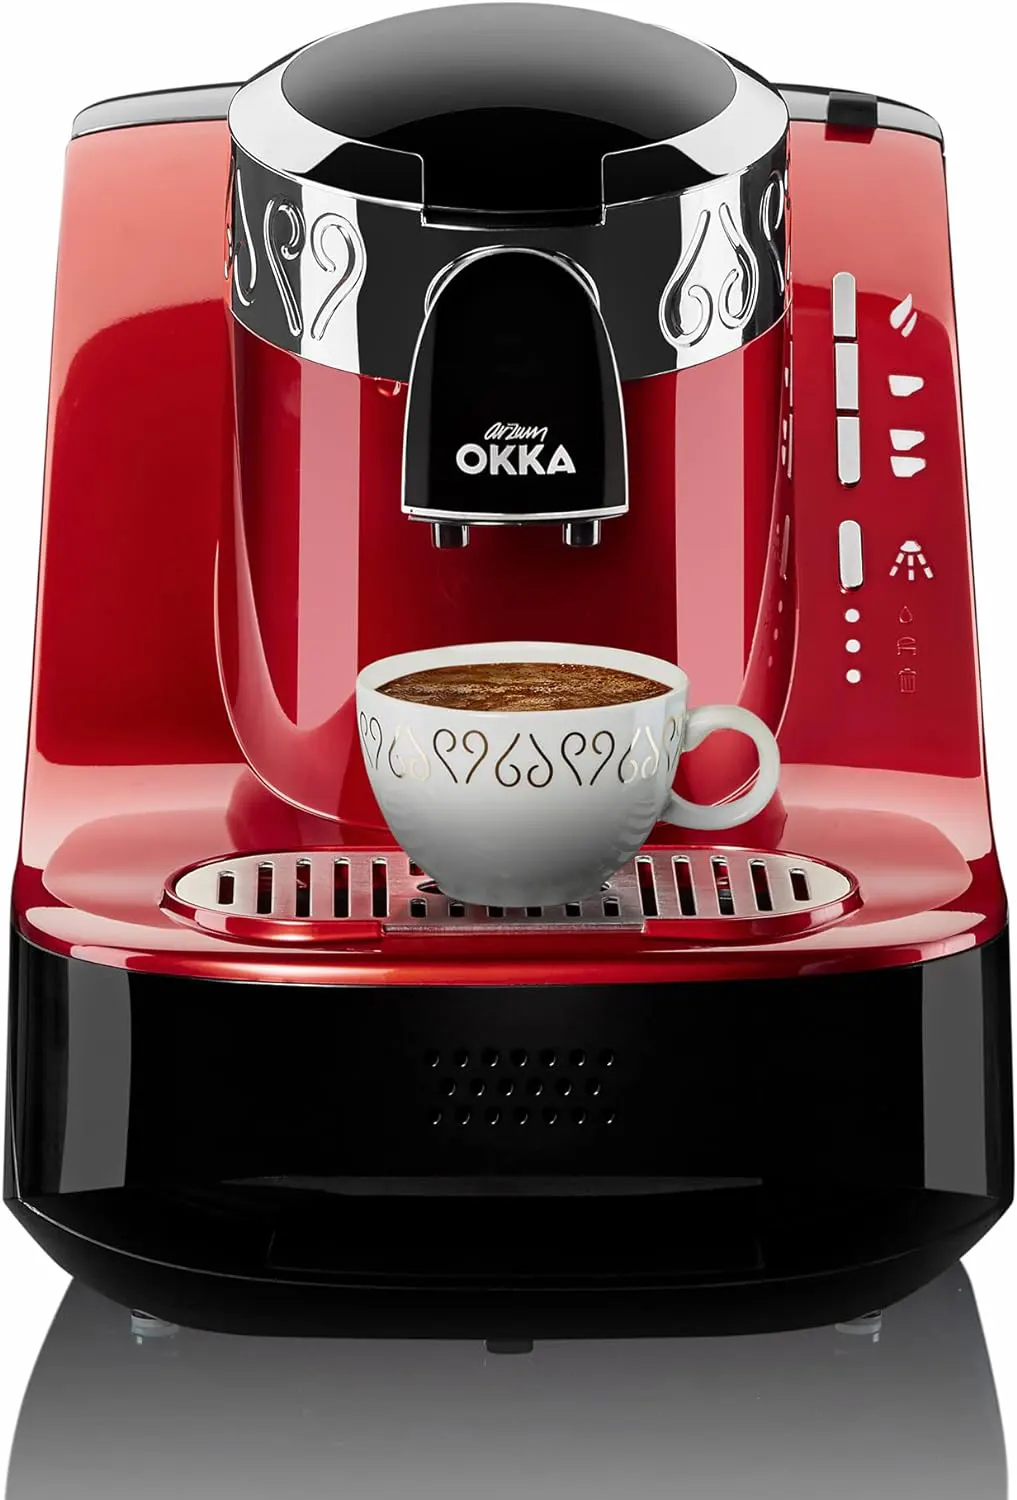 ماكينة تحضير القهوة التركي ارزوم اوكا، 710 وات، أحمر،OK002-N